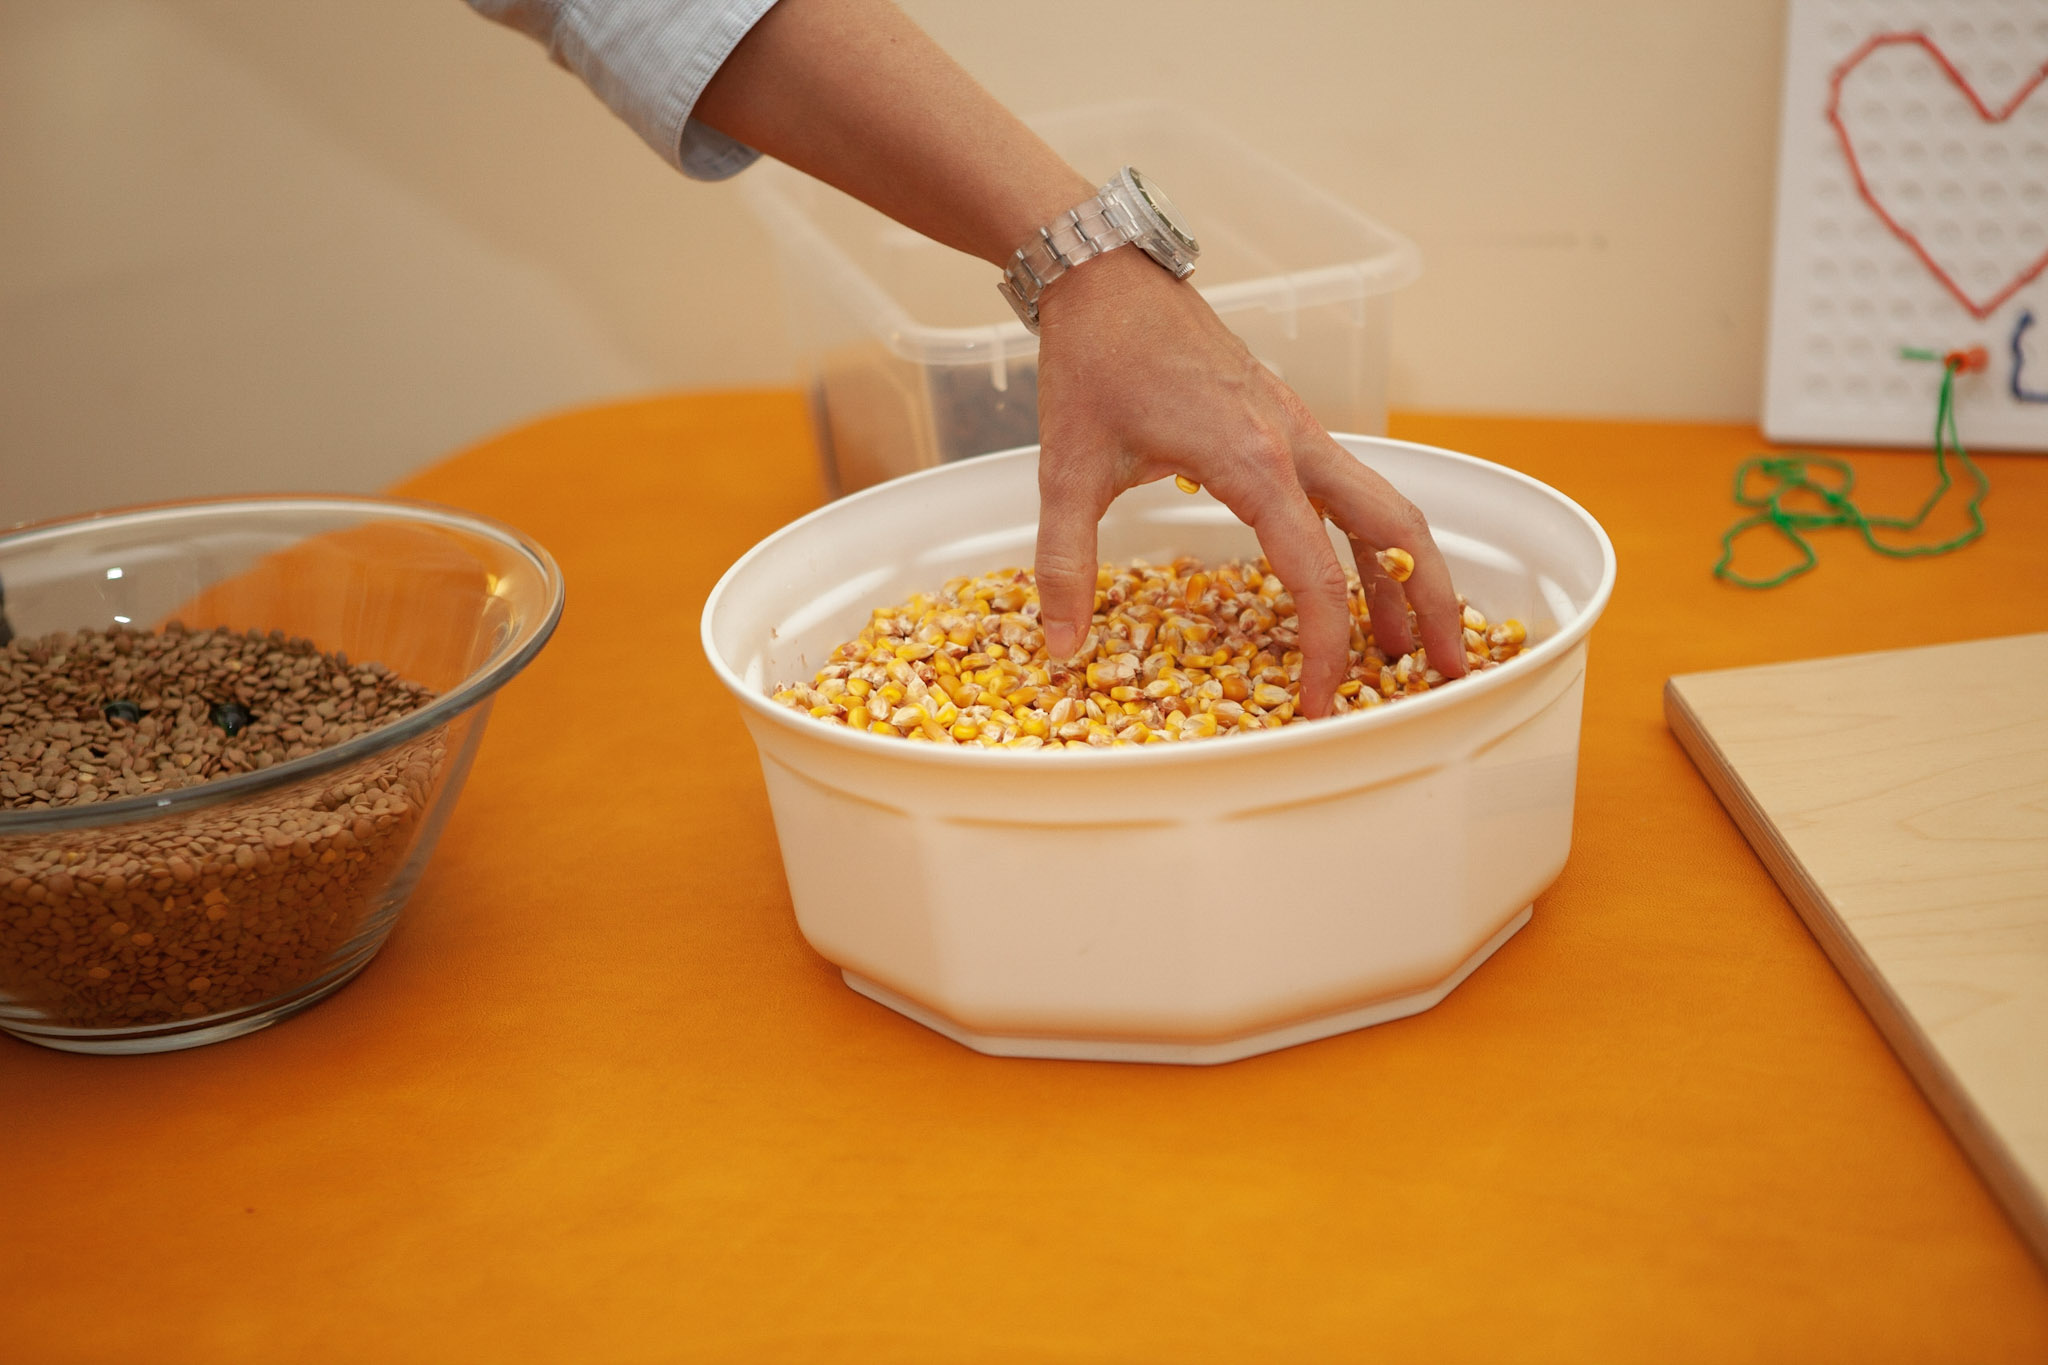 Eine Hand greift nach trockenen Maiskörnern in einer Schüssel